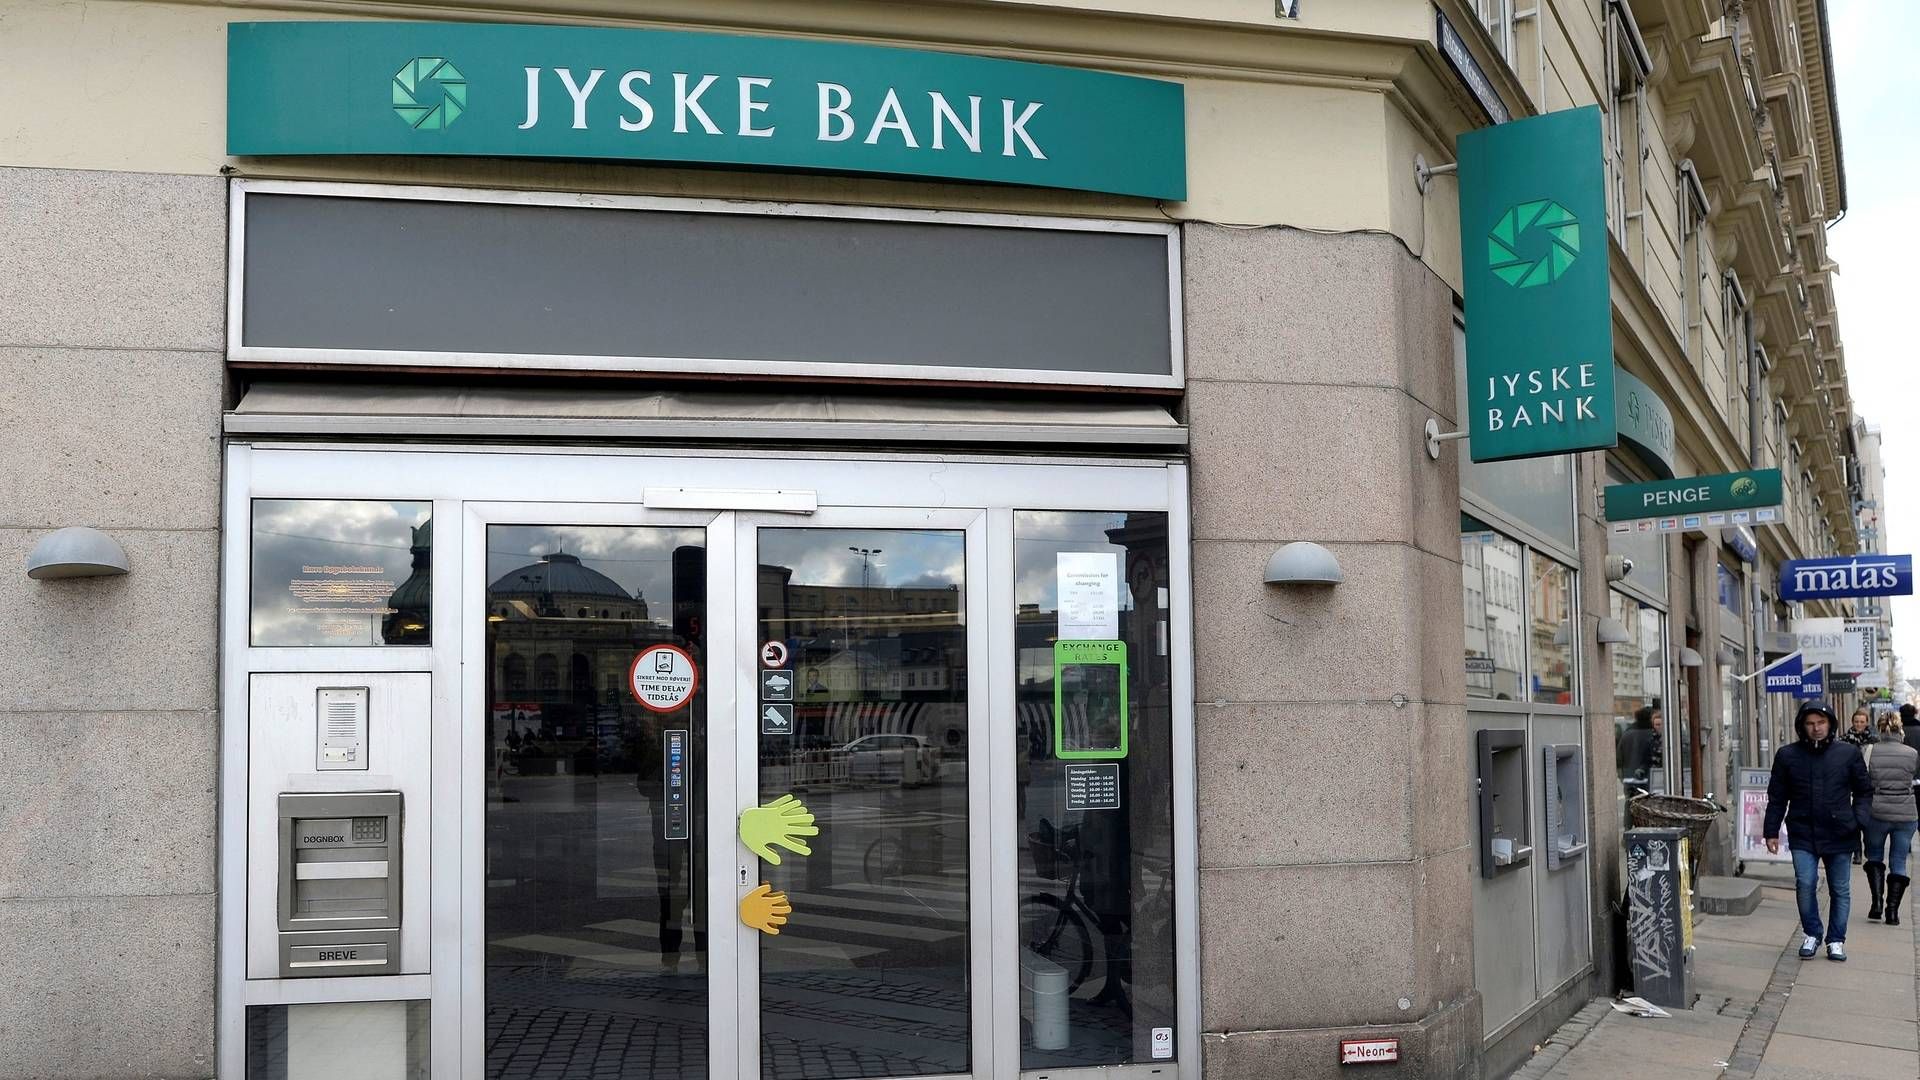 Jyske Bank overbød ikke konkurenterne i forhandlingerne om Handelsbanken ifølge anonyme kilder. | Foto: FABIAN BIMMER/REUTERS / X02840